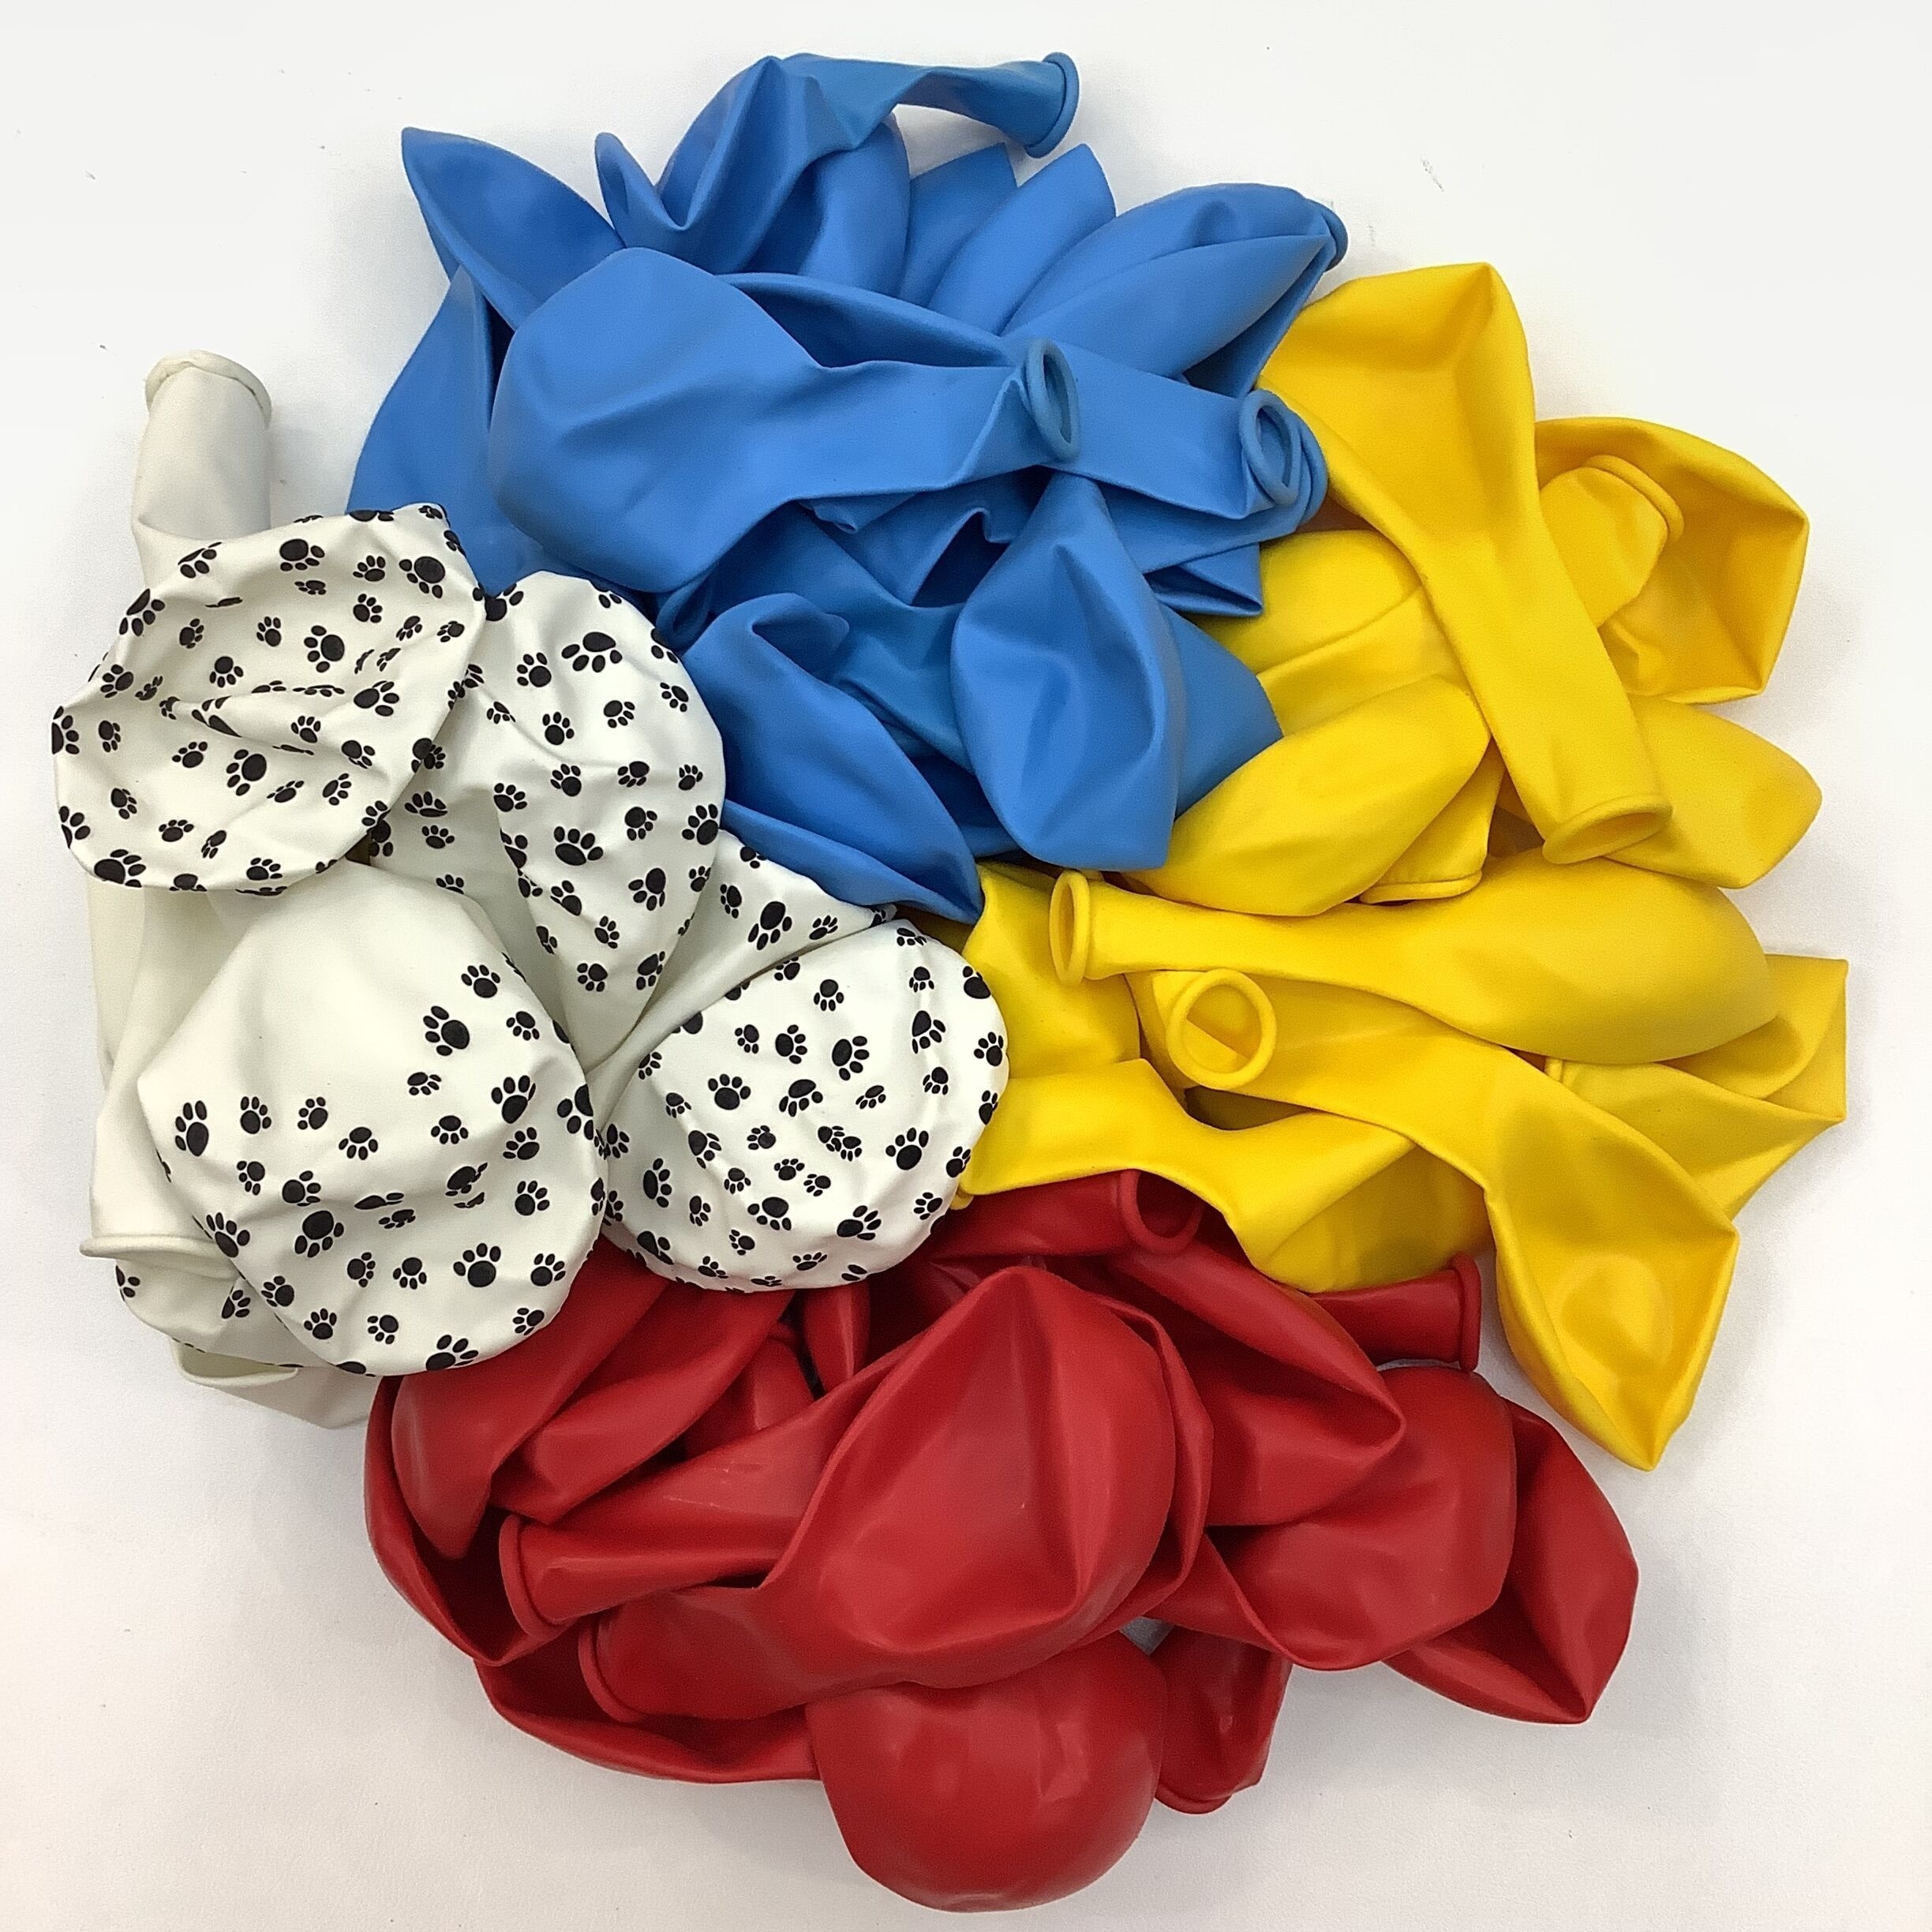 Todo en 1: kit de arco de guirnalda de globos de la Patrulla Canina con  globos de hueso de perro y huellas para decoraciones de cumpleaños de la